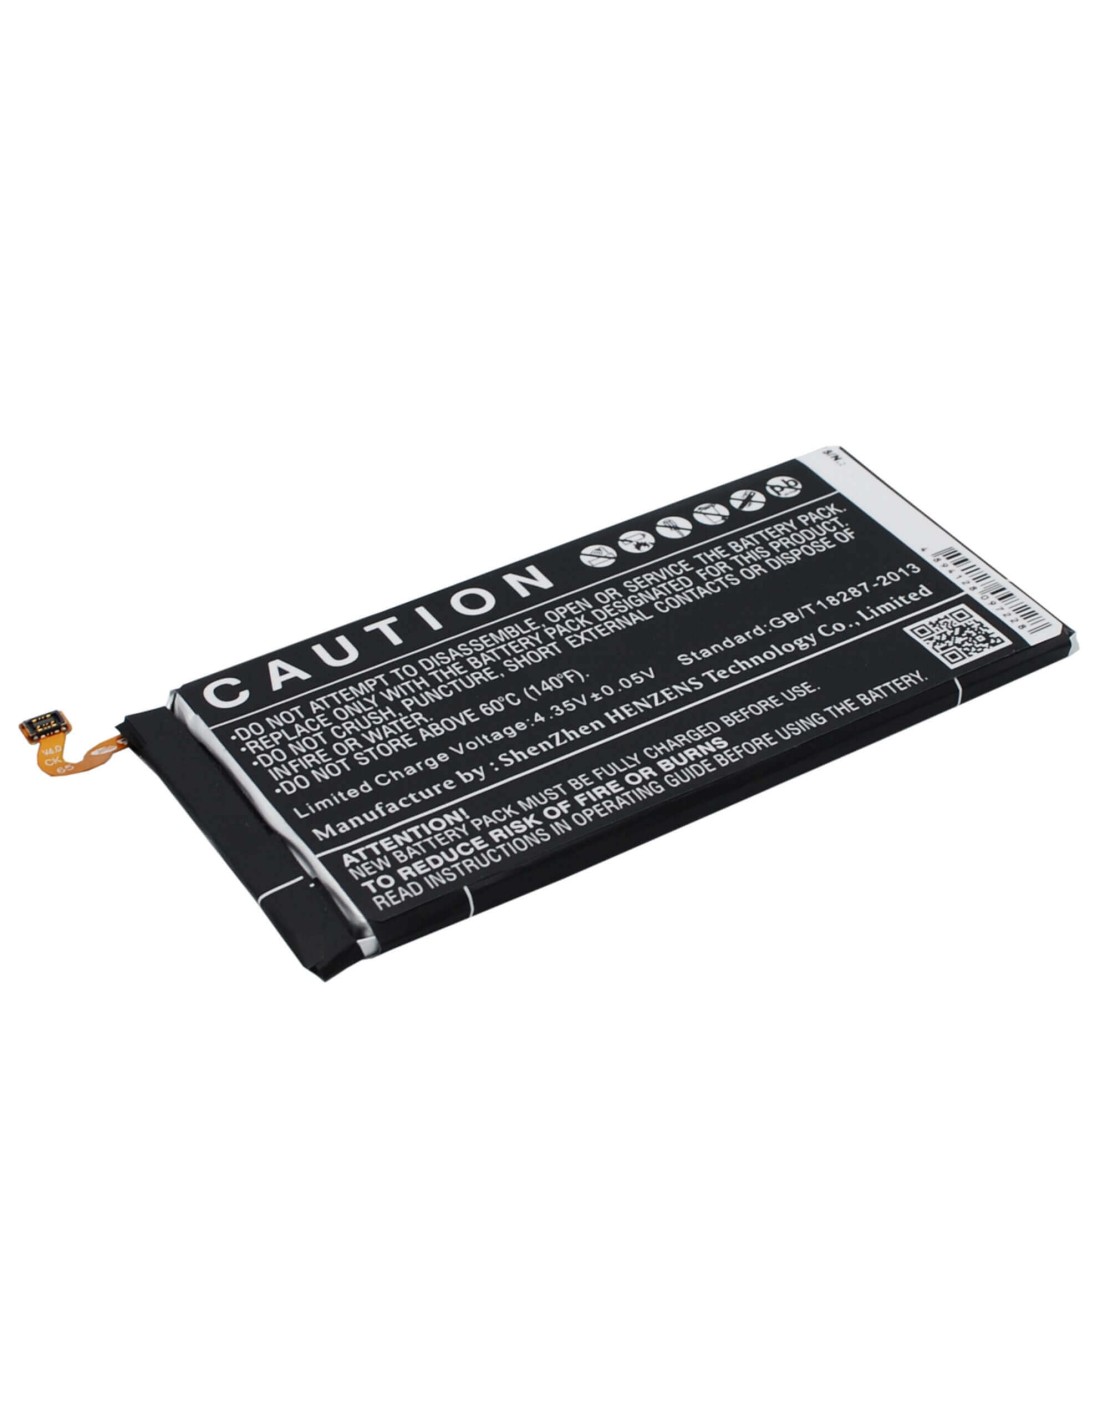 Battery for Samsung Galaxy E7, SM-E700M, SM-E700F 3.8V, 2950mAh - 11.21Wh